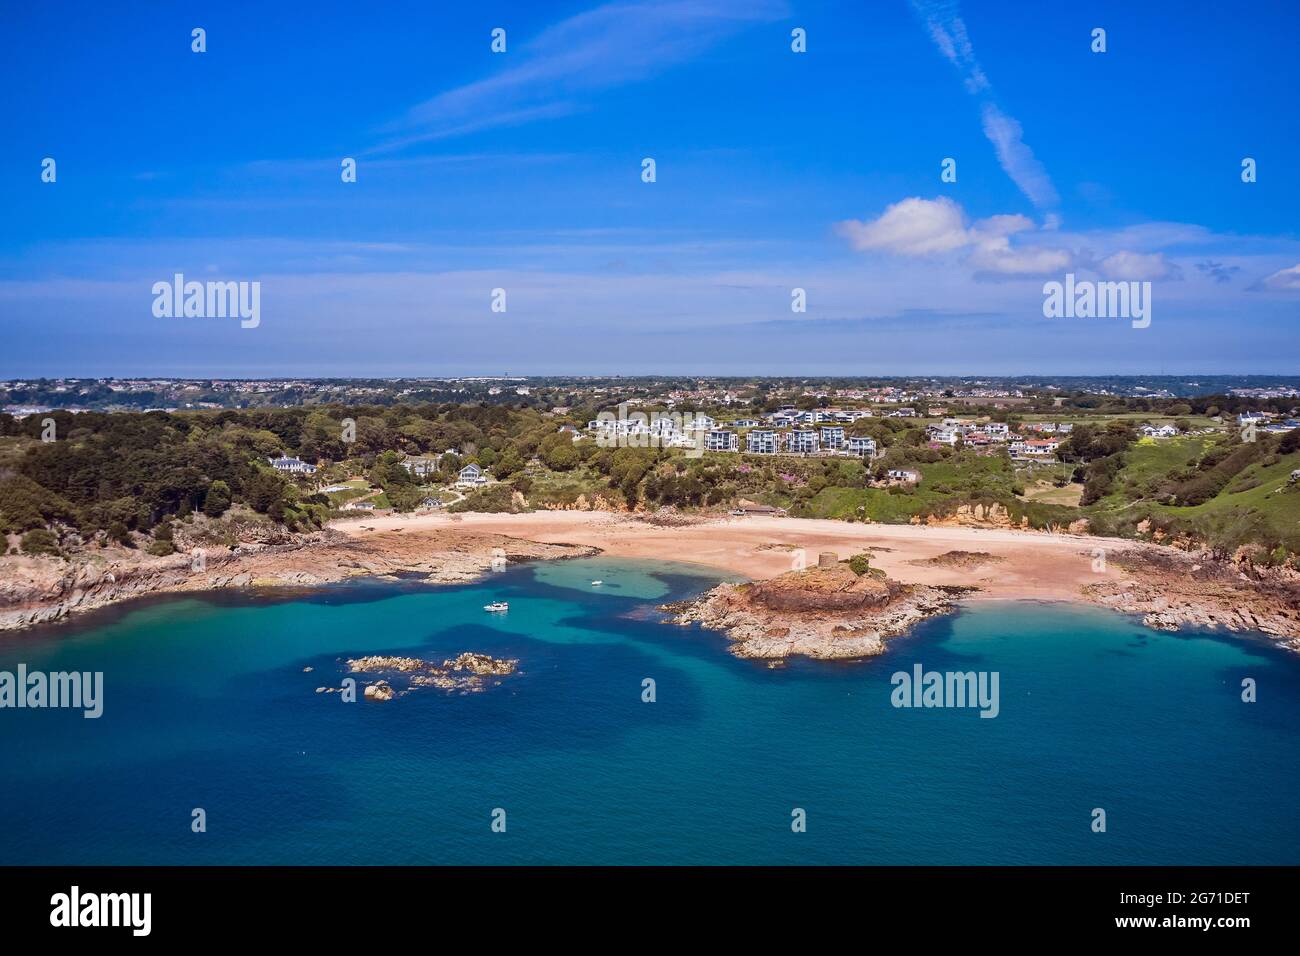 Image de Drone aérienne de Portelet Bay, Jersey, îles Anglo-Normandes avec ciel bleu et eau calme. Banque D'Images